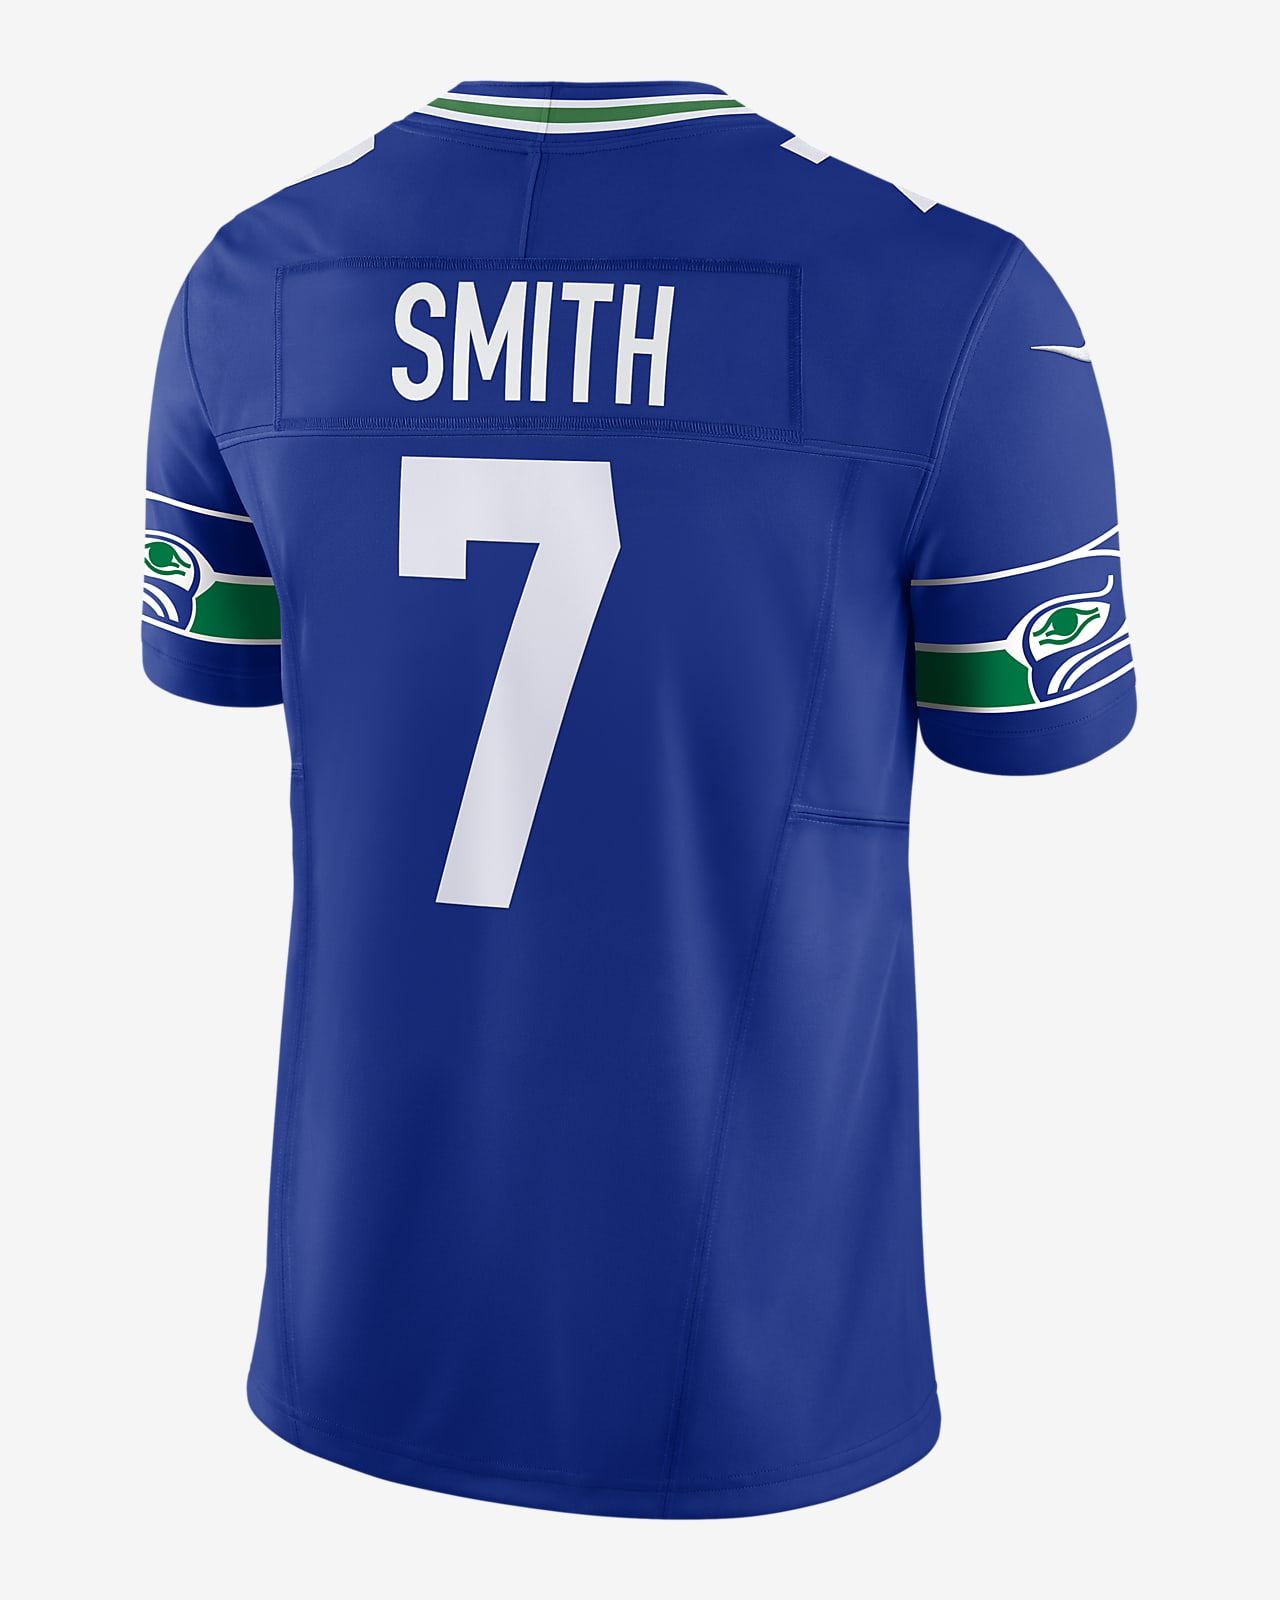 12th Fan Seattle Seahawks Men's Nike Dri-FIT NFL Limited Football Jersey.